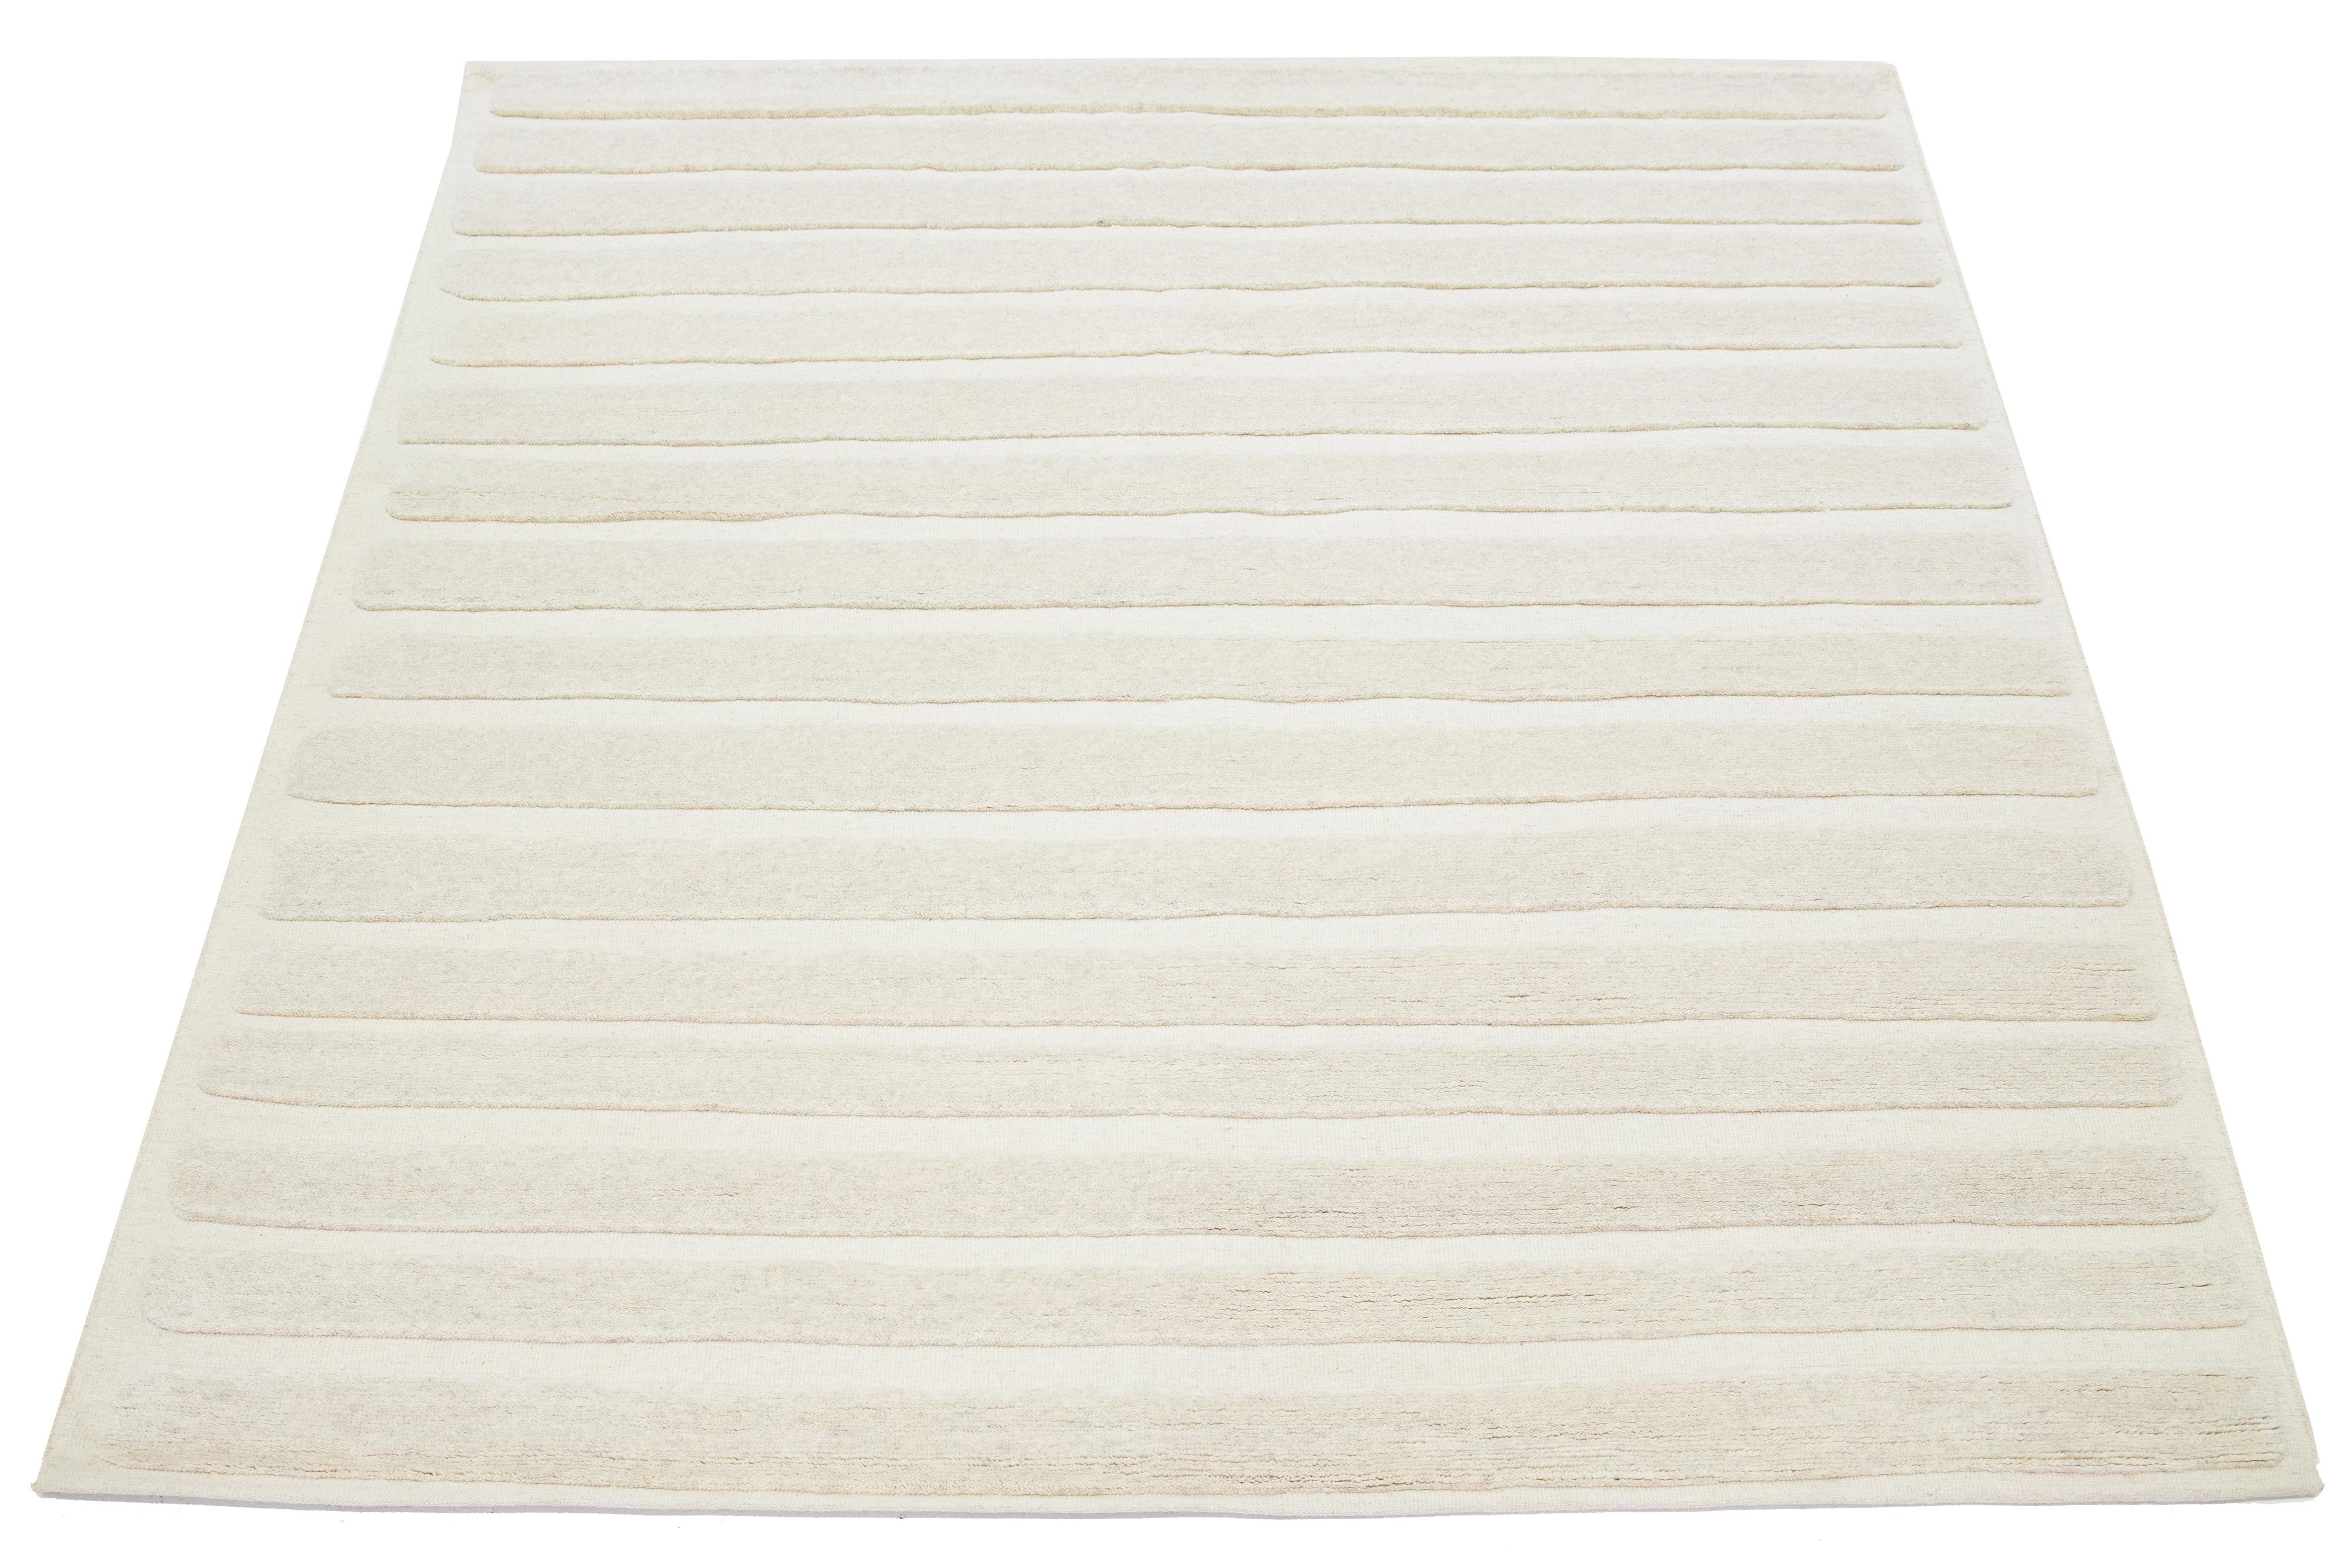 Ce tapis noué à la main dans un style marocain est en laine et présente une esthétique minimaliste fascinante. Il est conçu avec des rayures contemporaines sur un fond ivoire naturel.

Ce tapis mesure 8'2